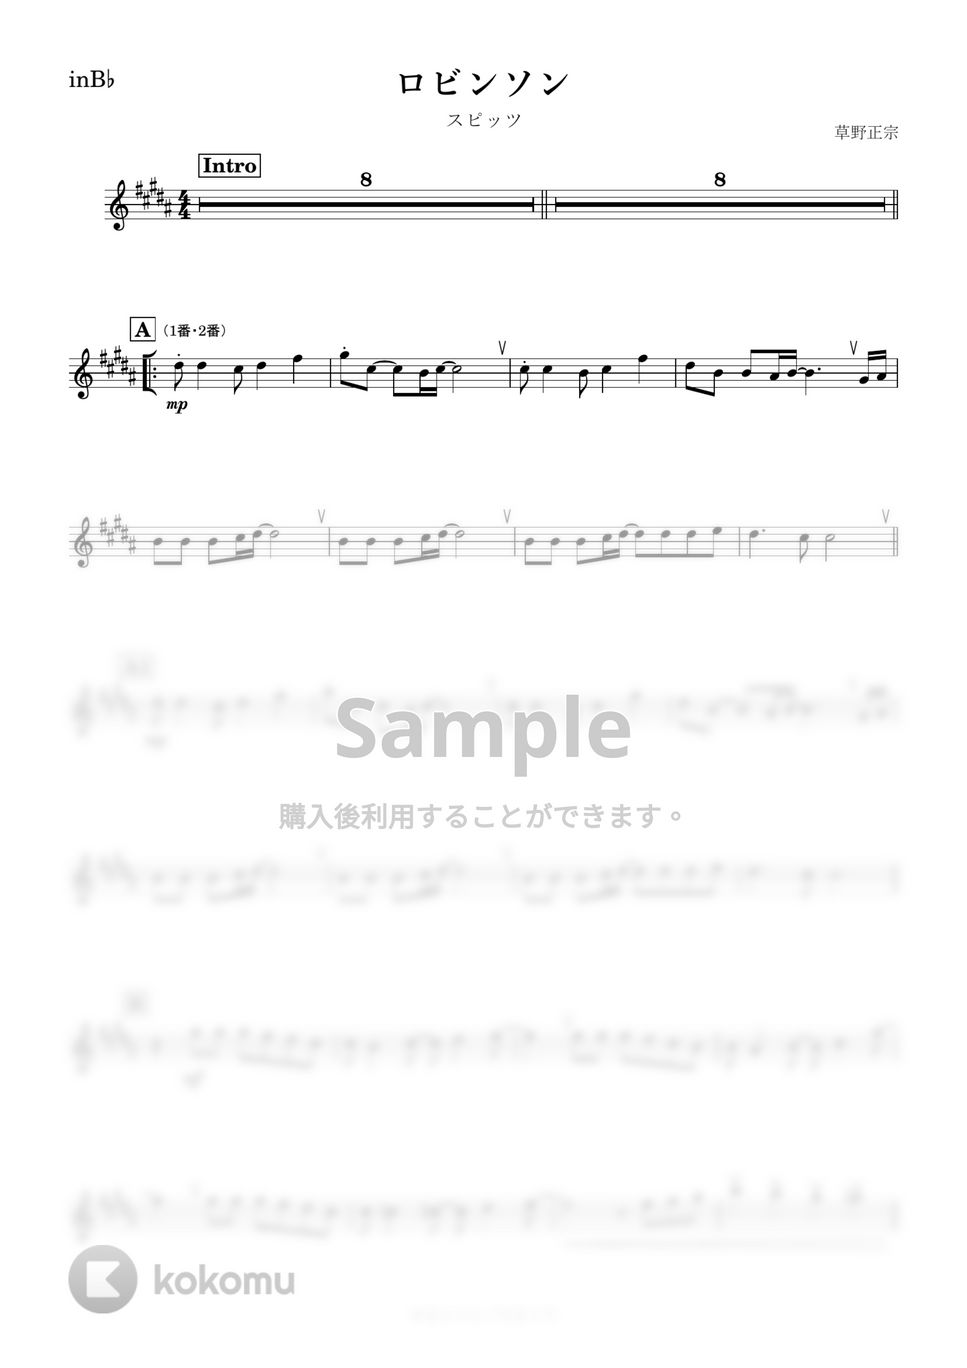 スピッツ - ロビンソン (B♭) by kanamusic